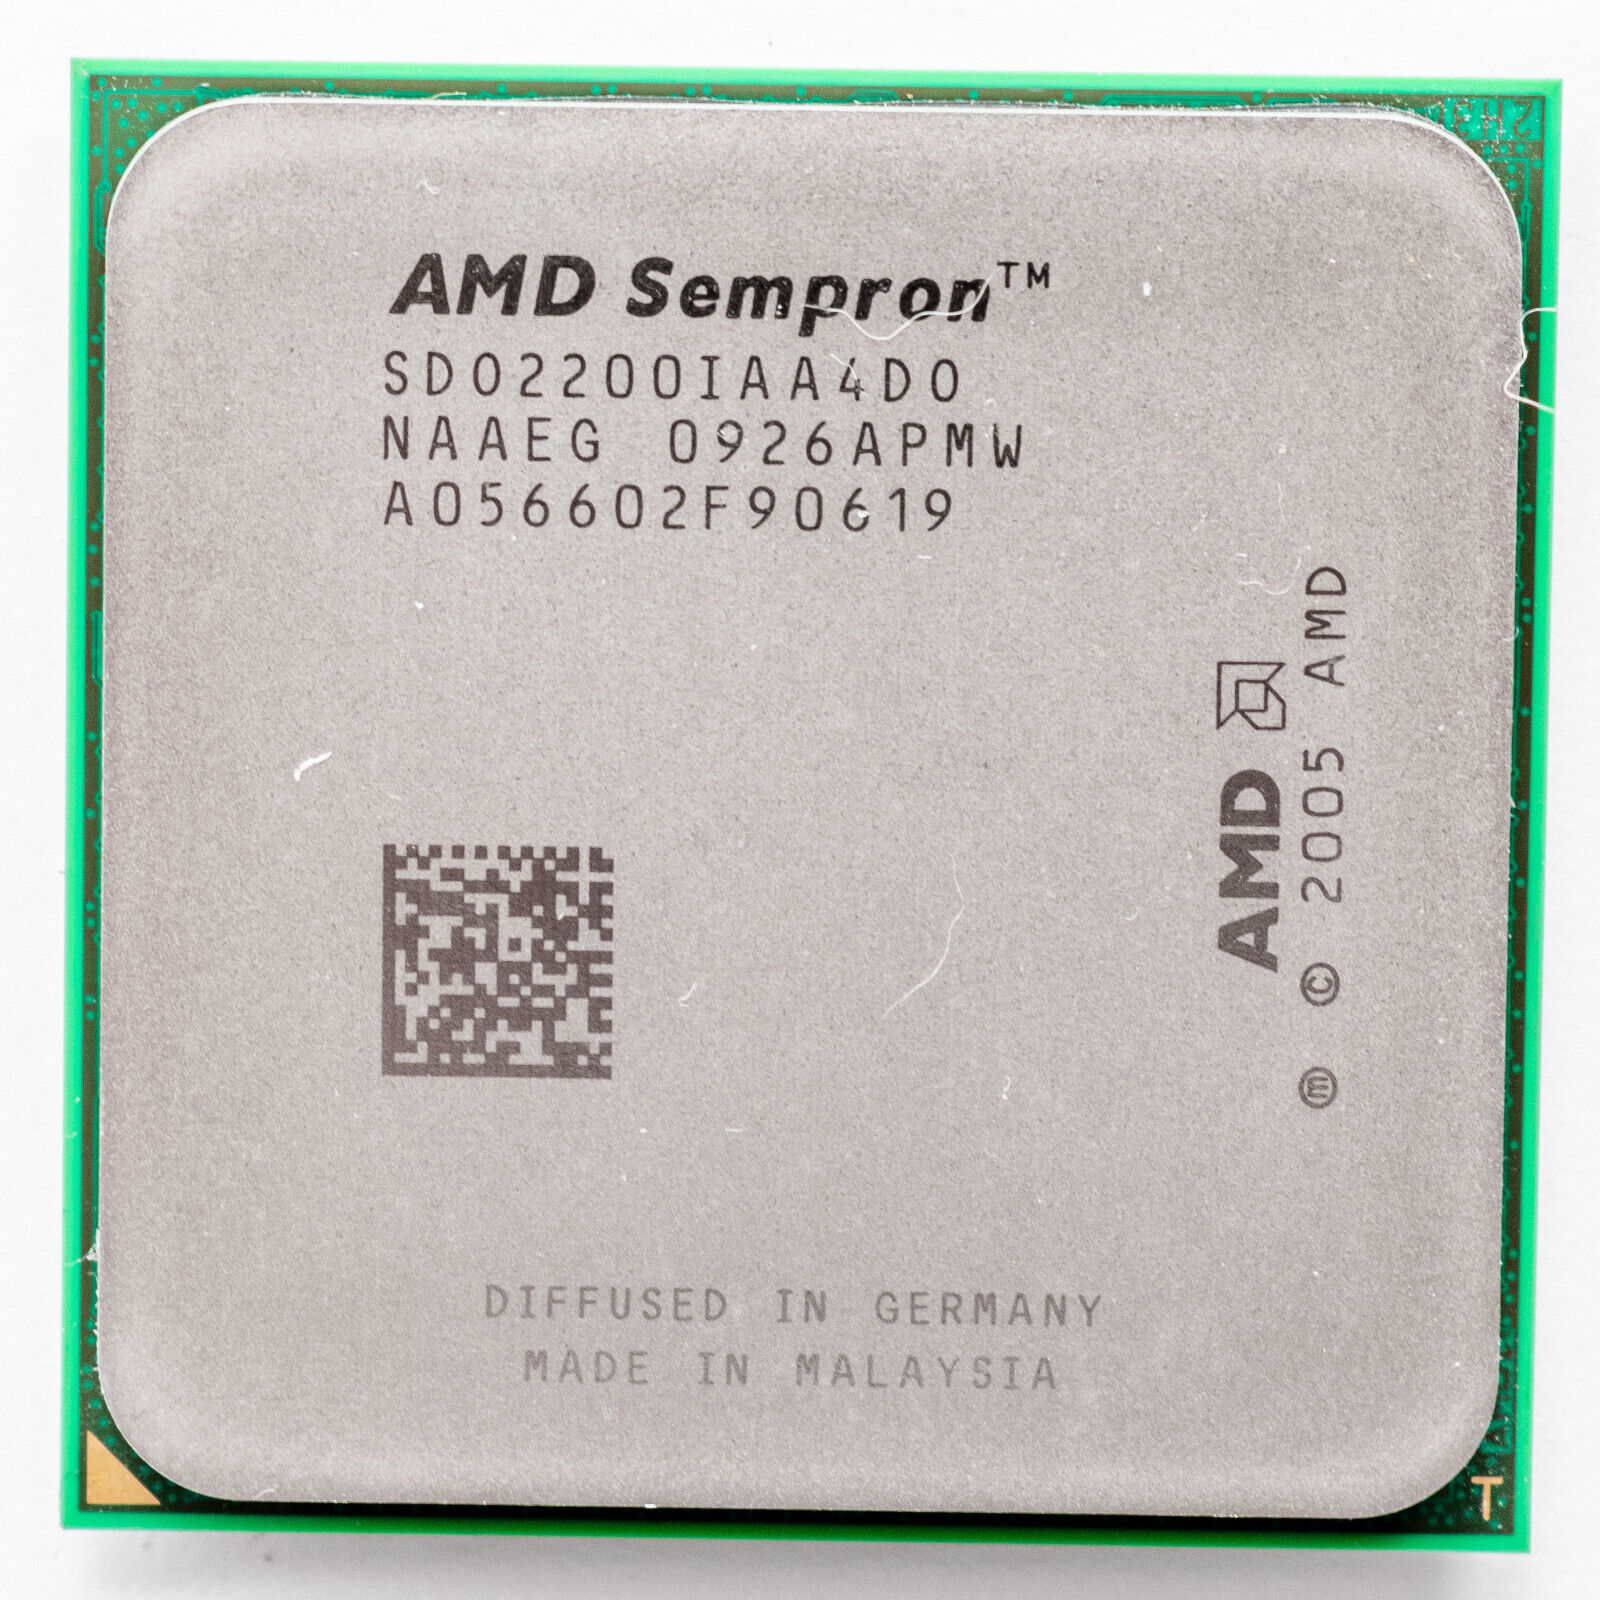 AMD Sempron X2 2200 2.0GHz Dual Core AM2 Processor SDO2200IAA4DO 65W 2009 Model